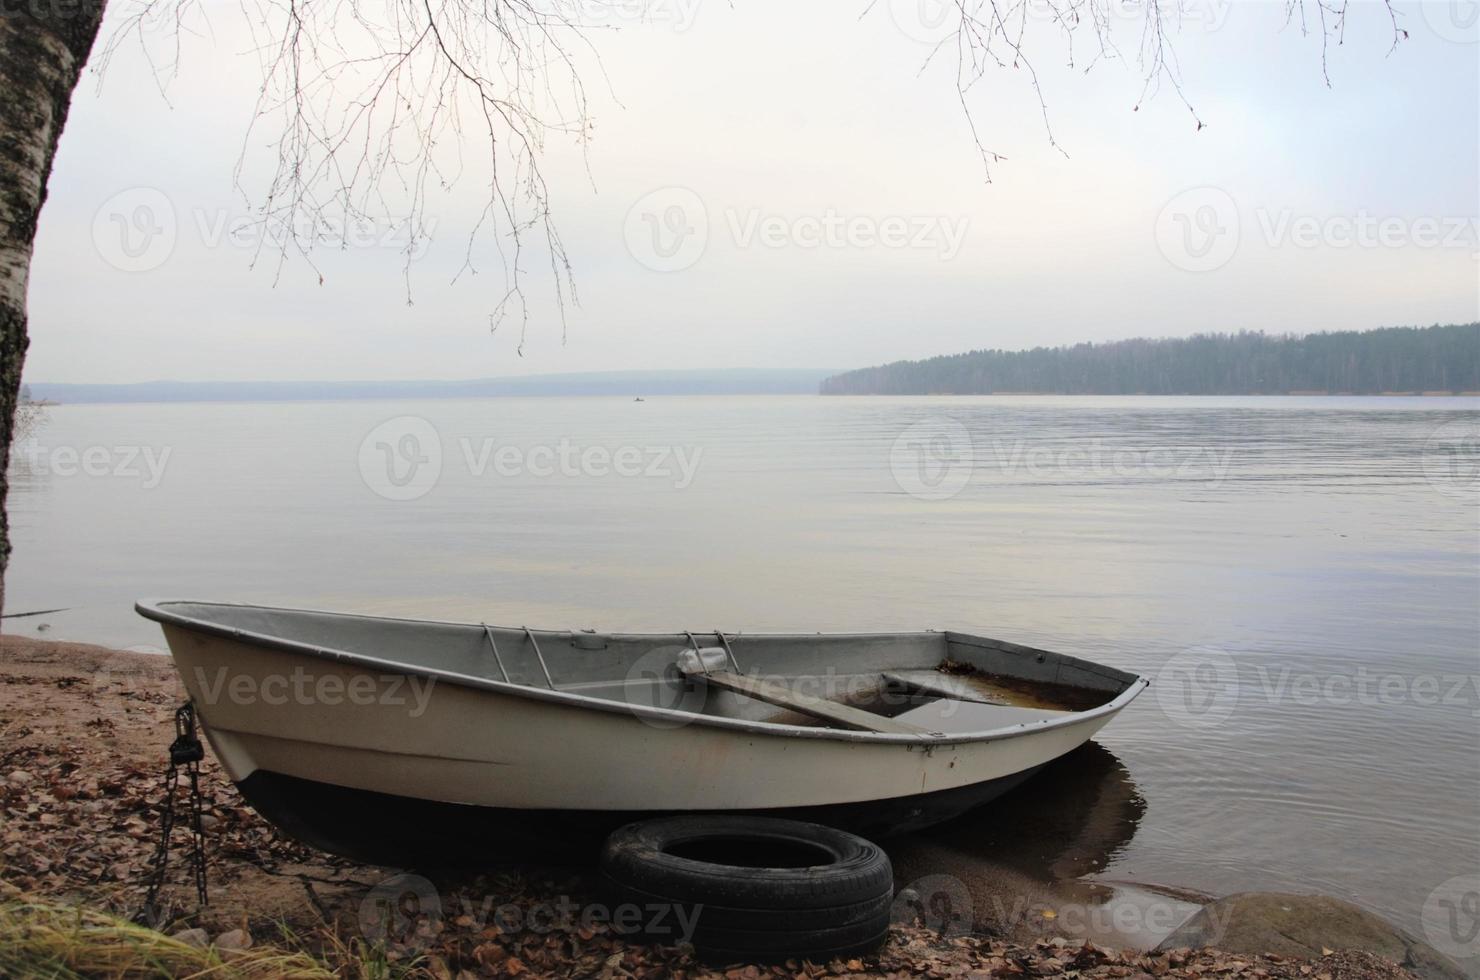 bateau au bord d'un lac calme, paysage aux couleurs neutres photo